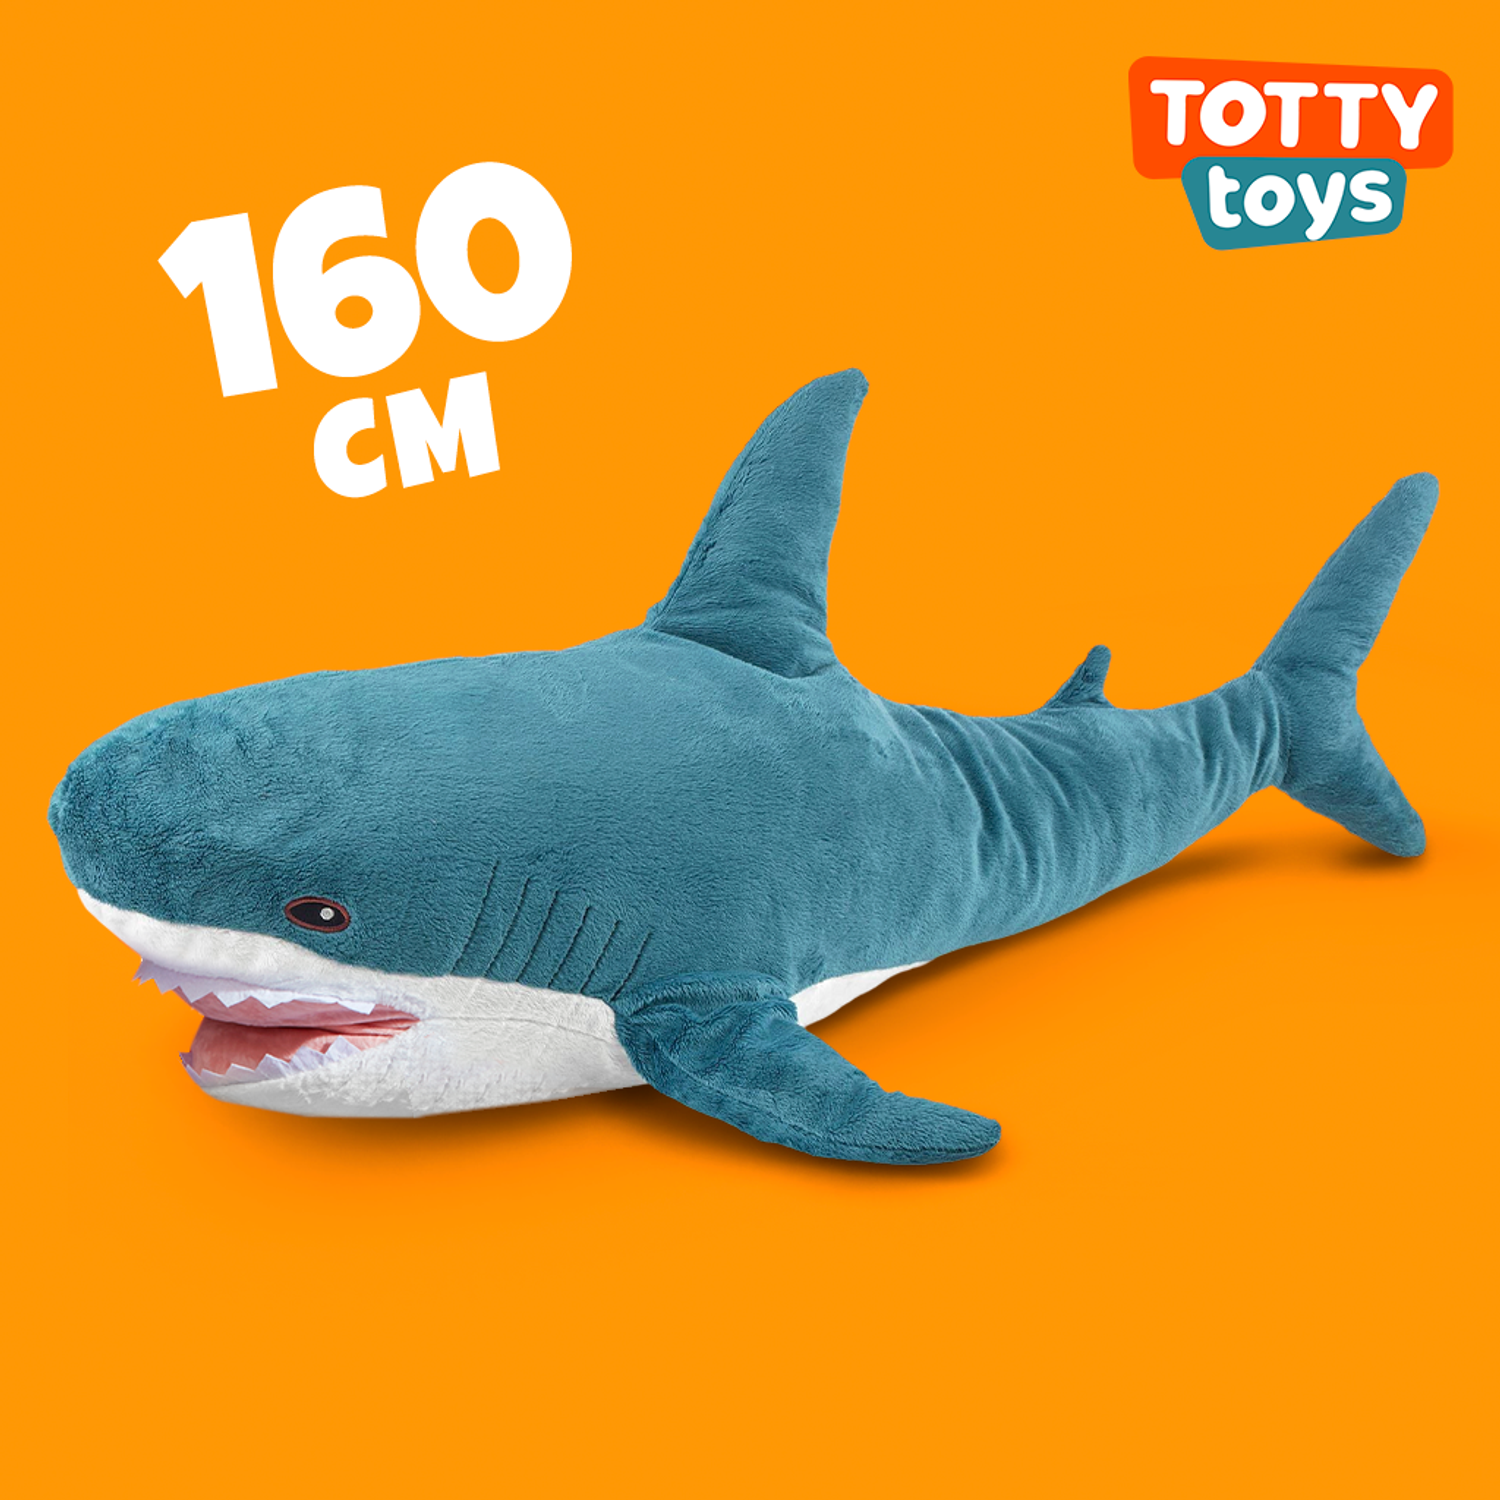 Мягкая Игрушка TOTTY TOYS акула большая 160 см - фото 1